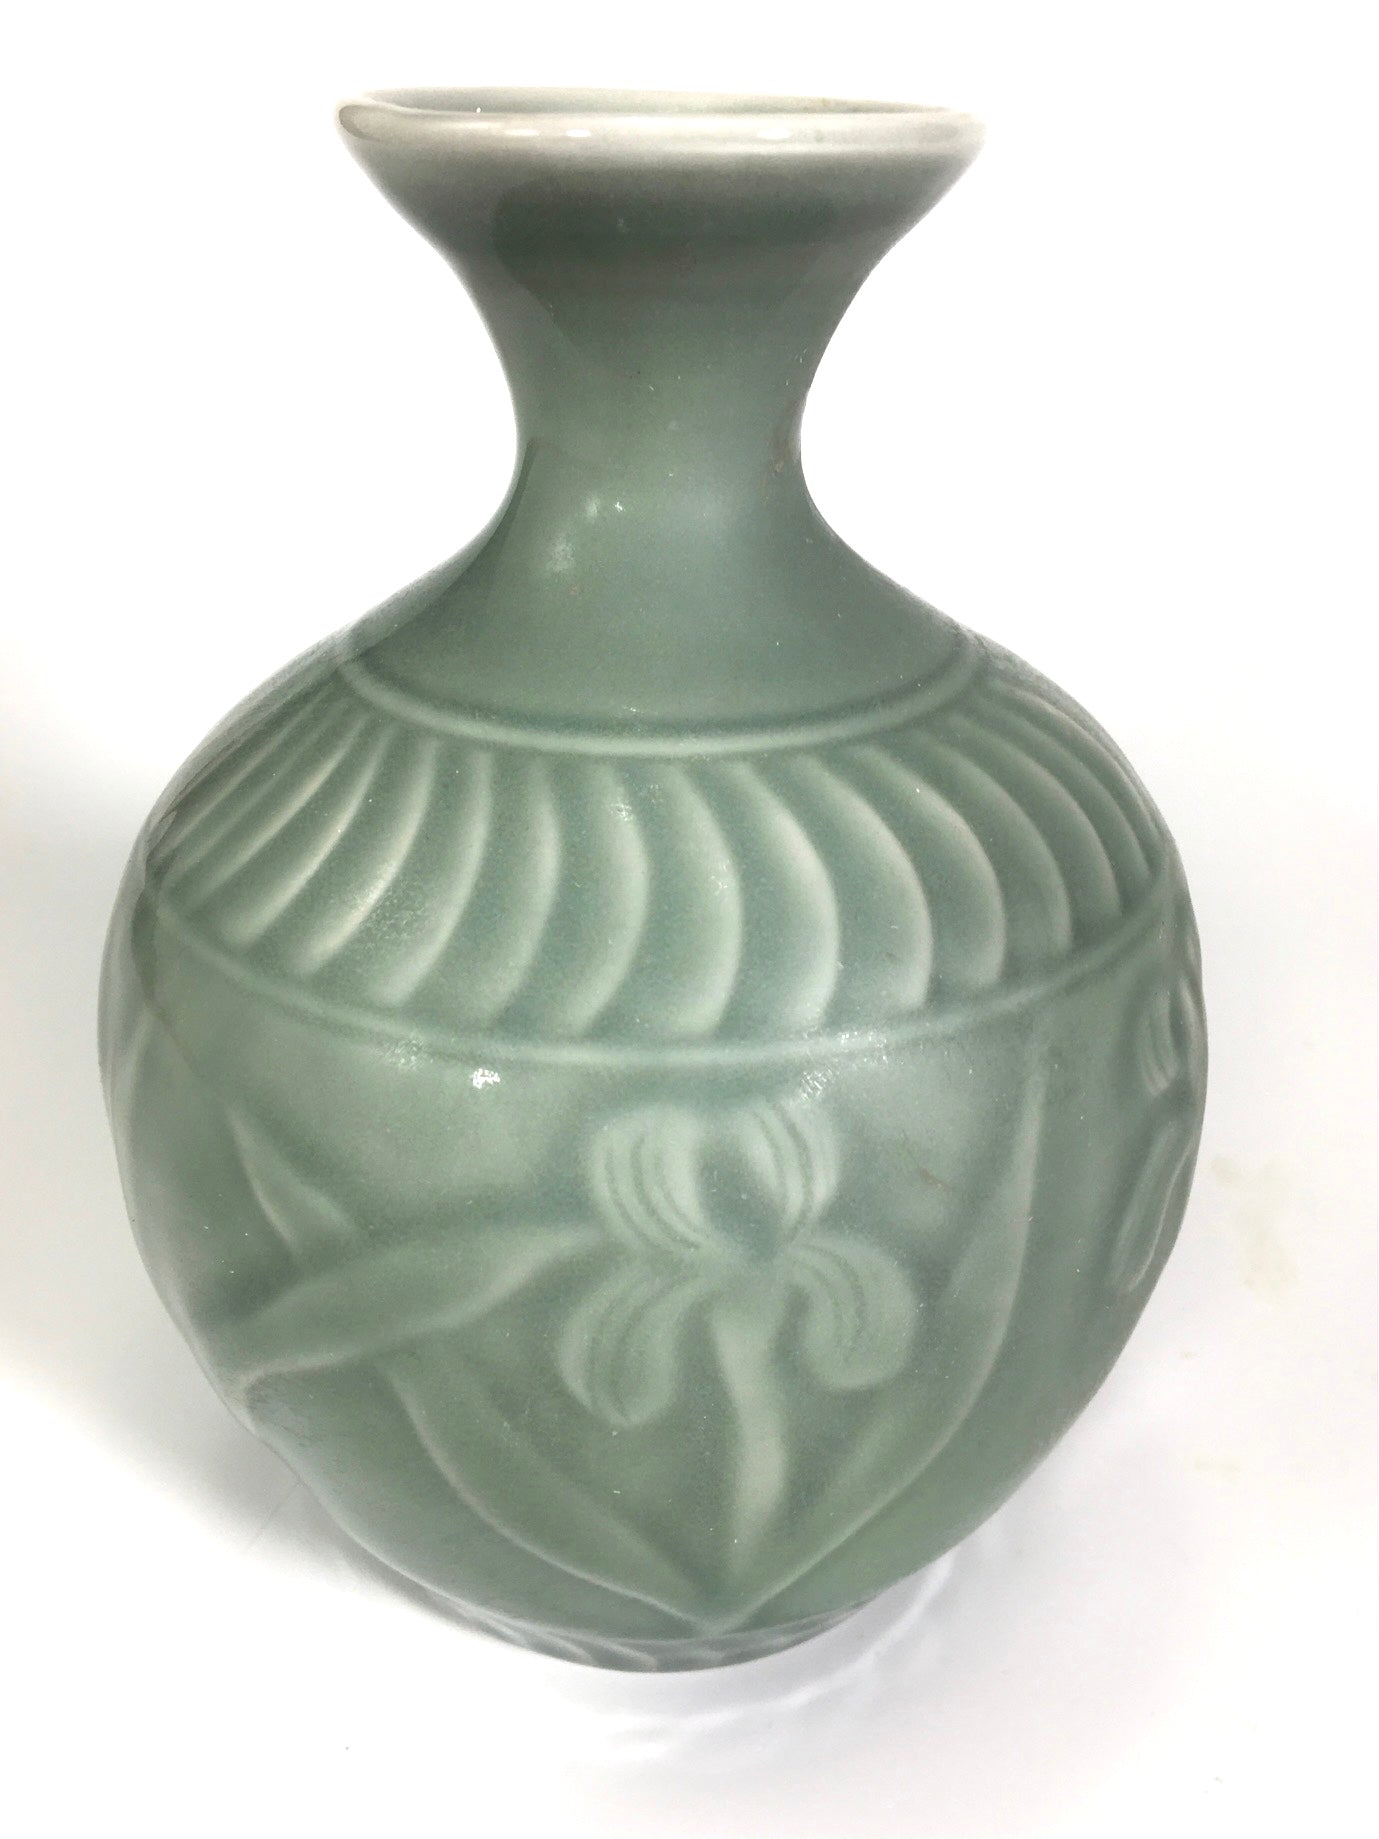 Porcelain vase hand-carved irises and celadon glaze